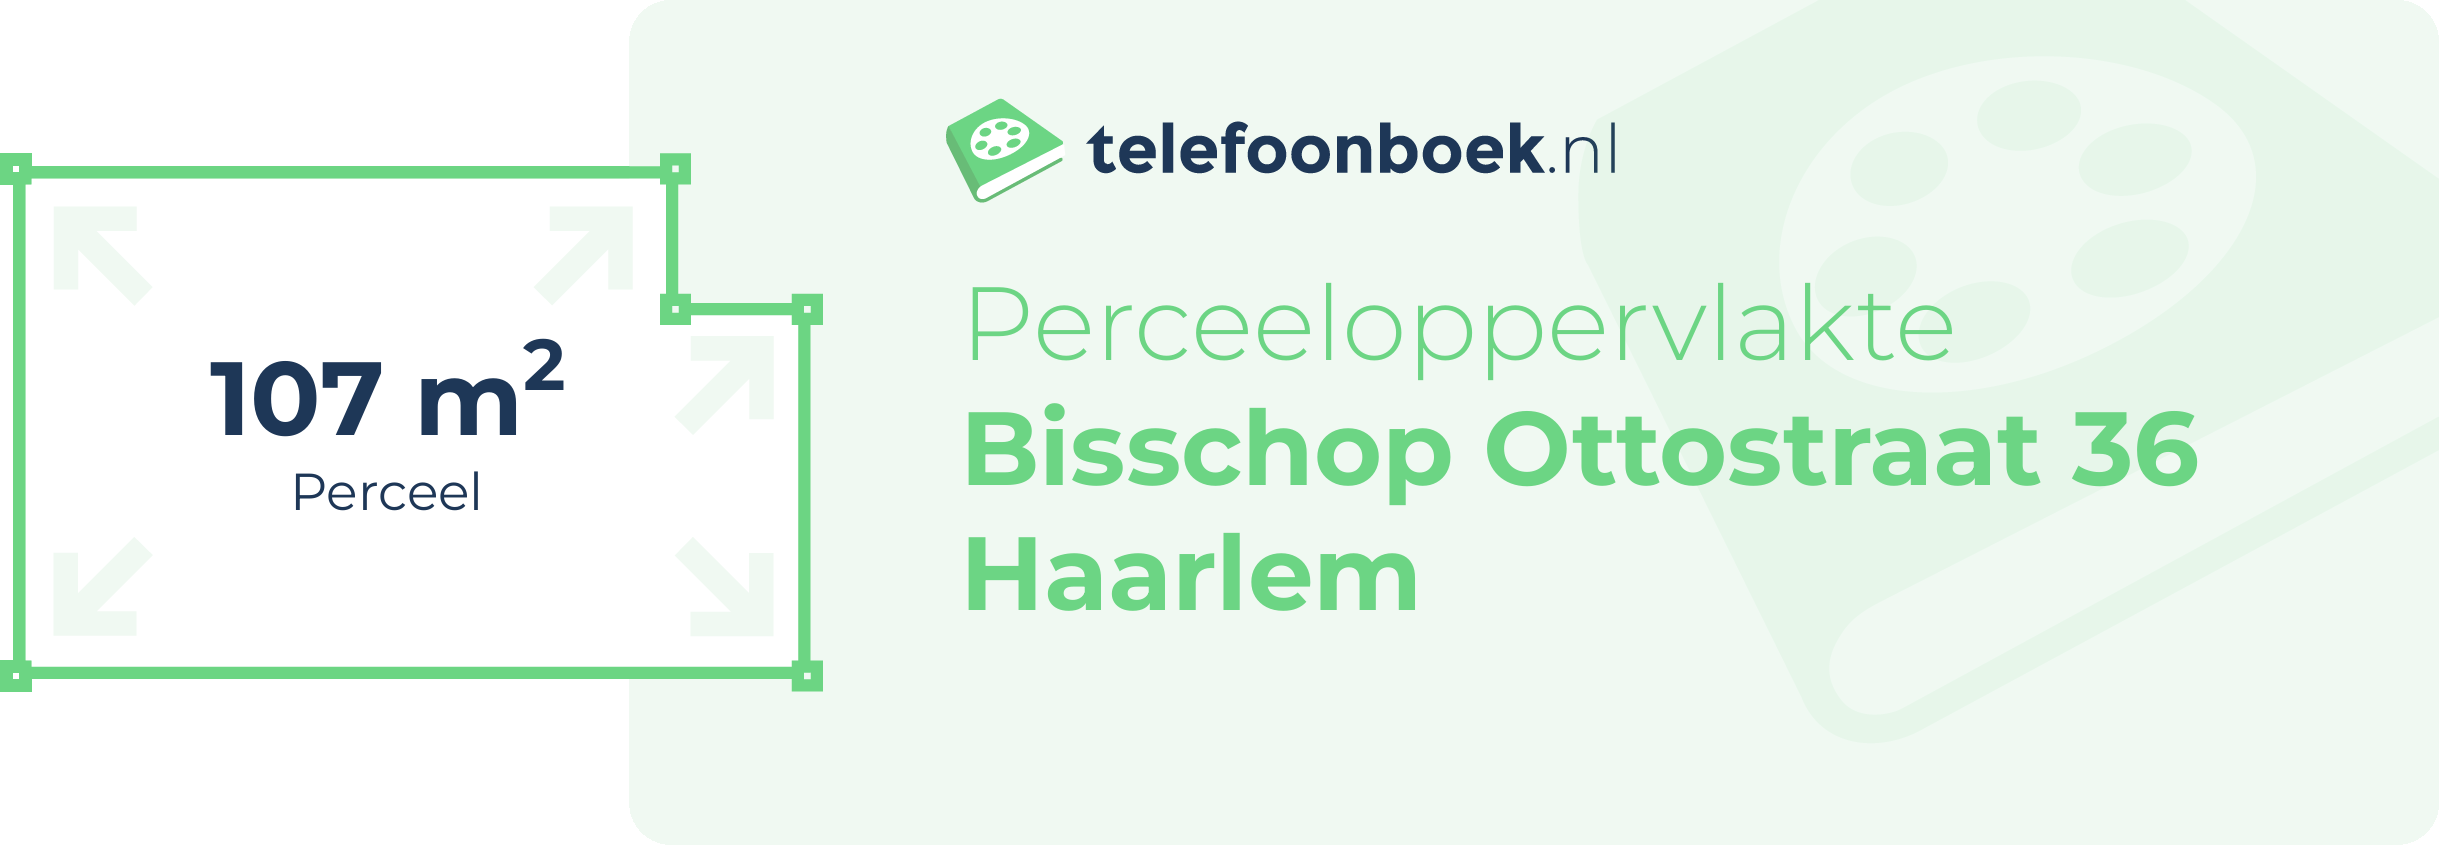 Perceeloppervlakte Bisschop Ottostraat 36 Haarlem